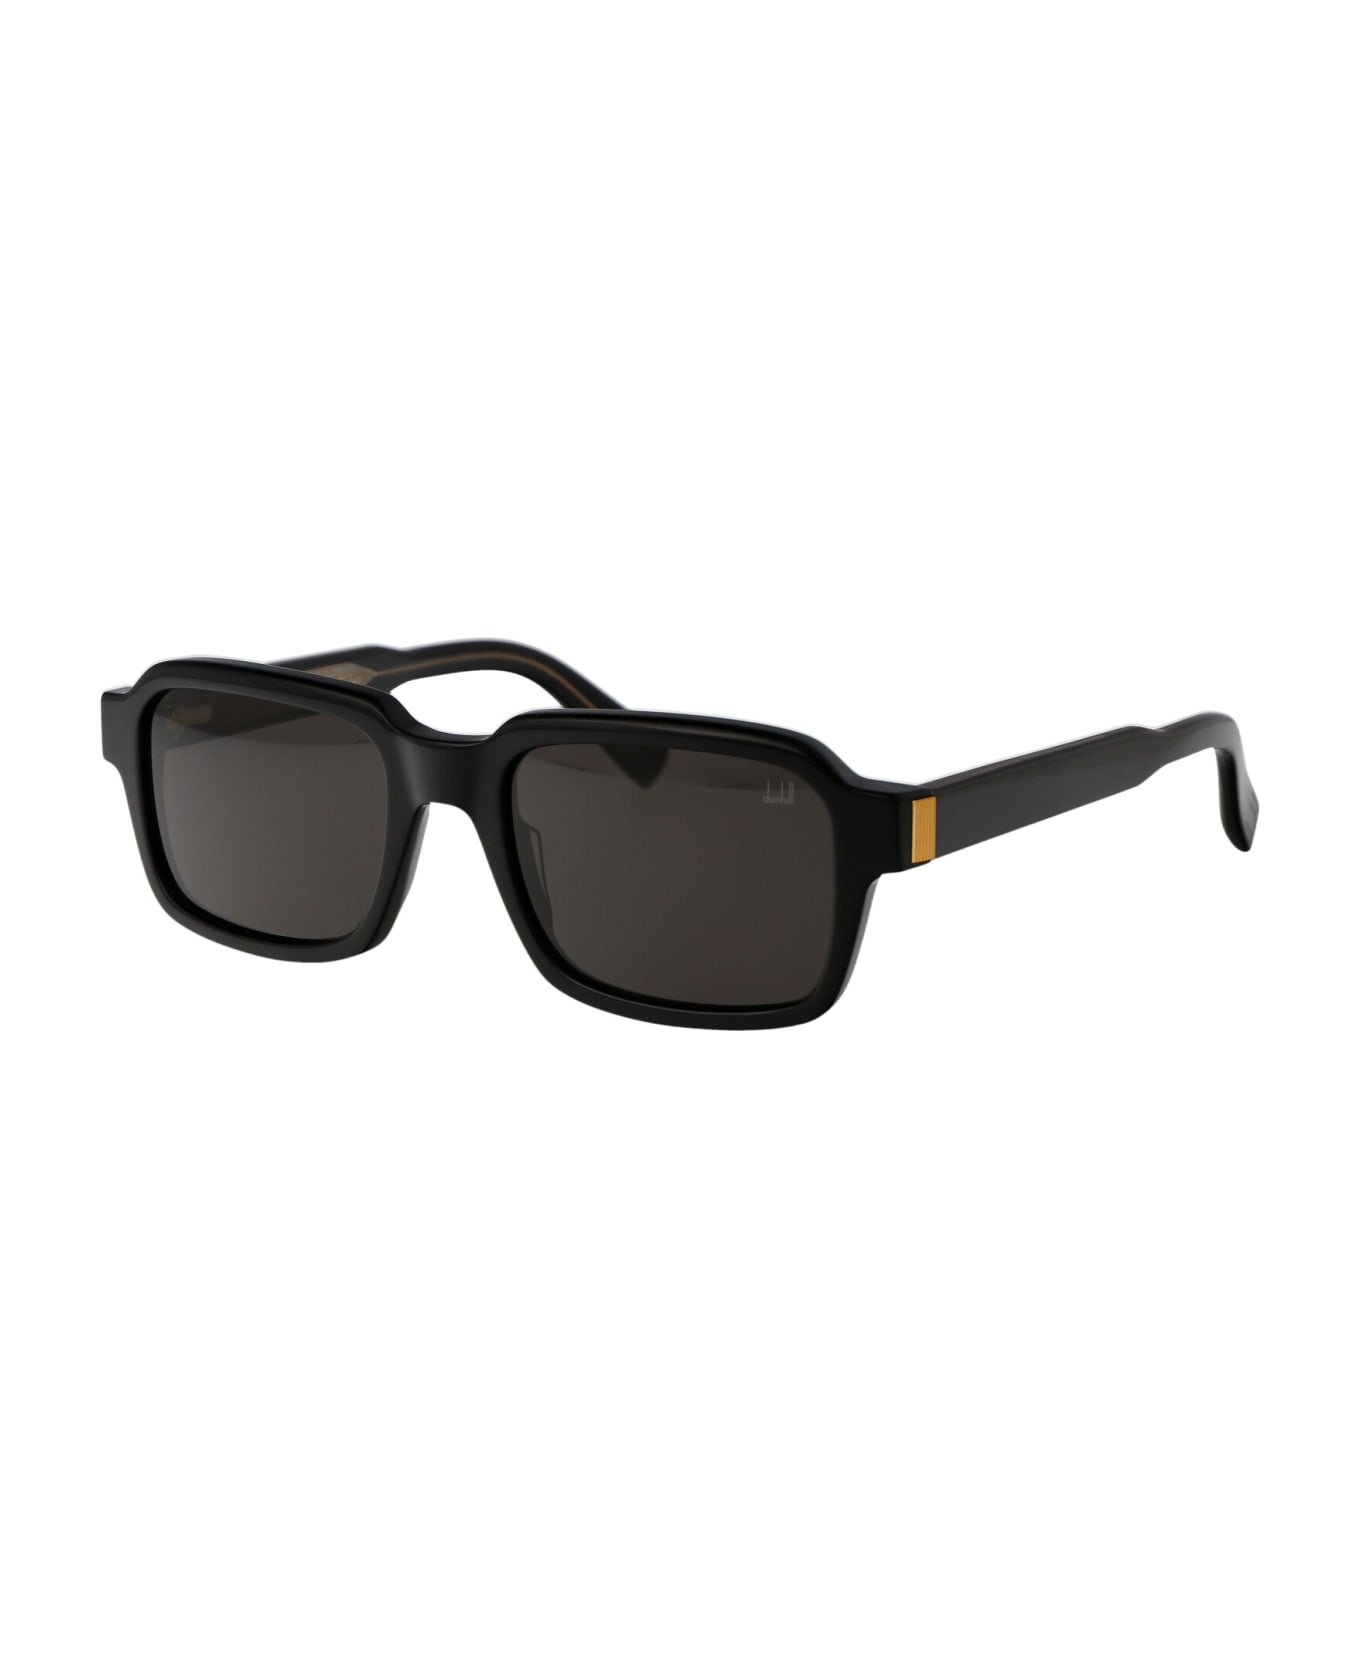 Dunhill Du0057s Sunglasses - 001 BLACK BLACK GREY サングラス